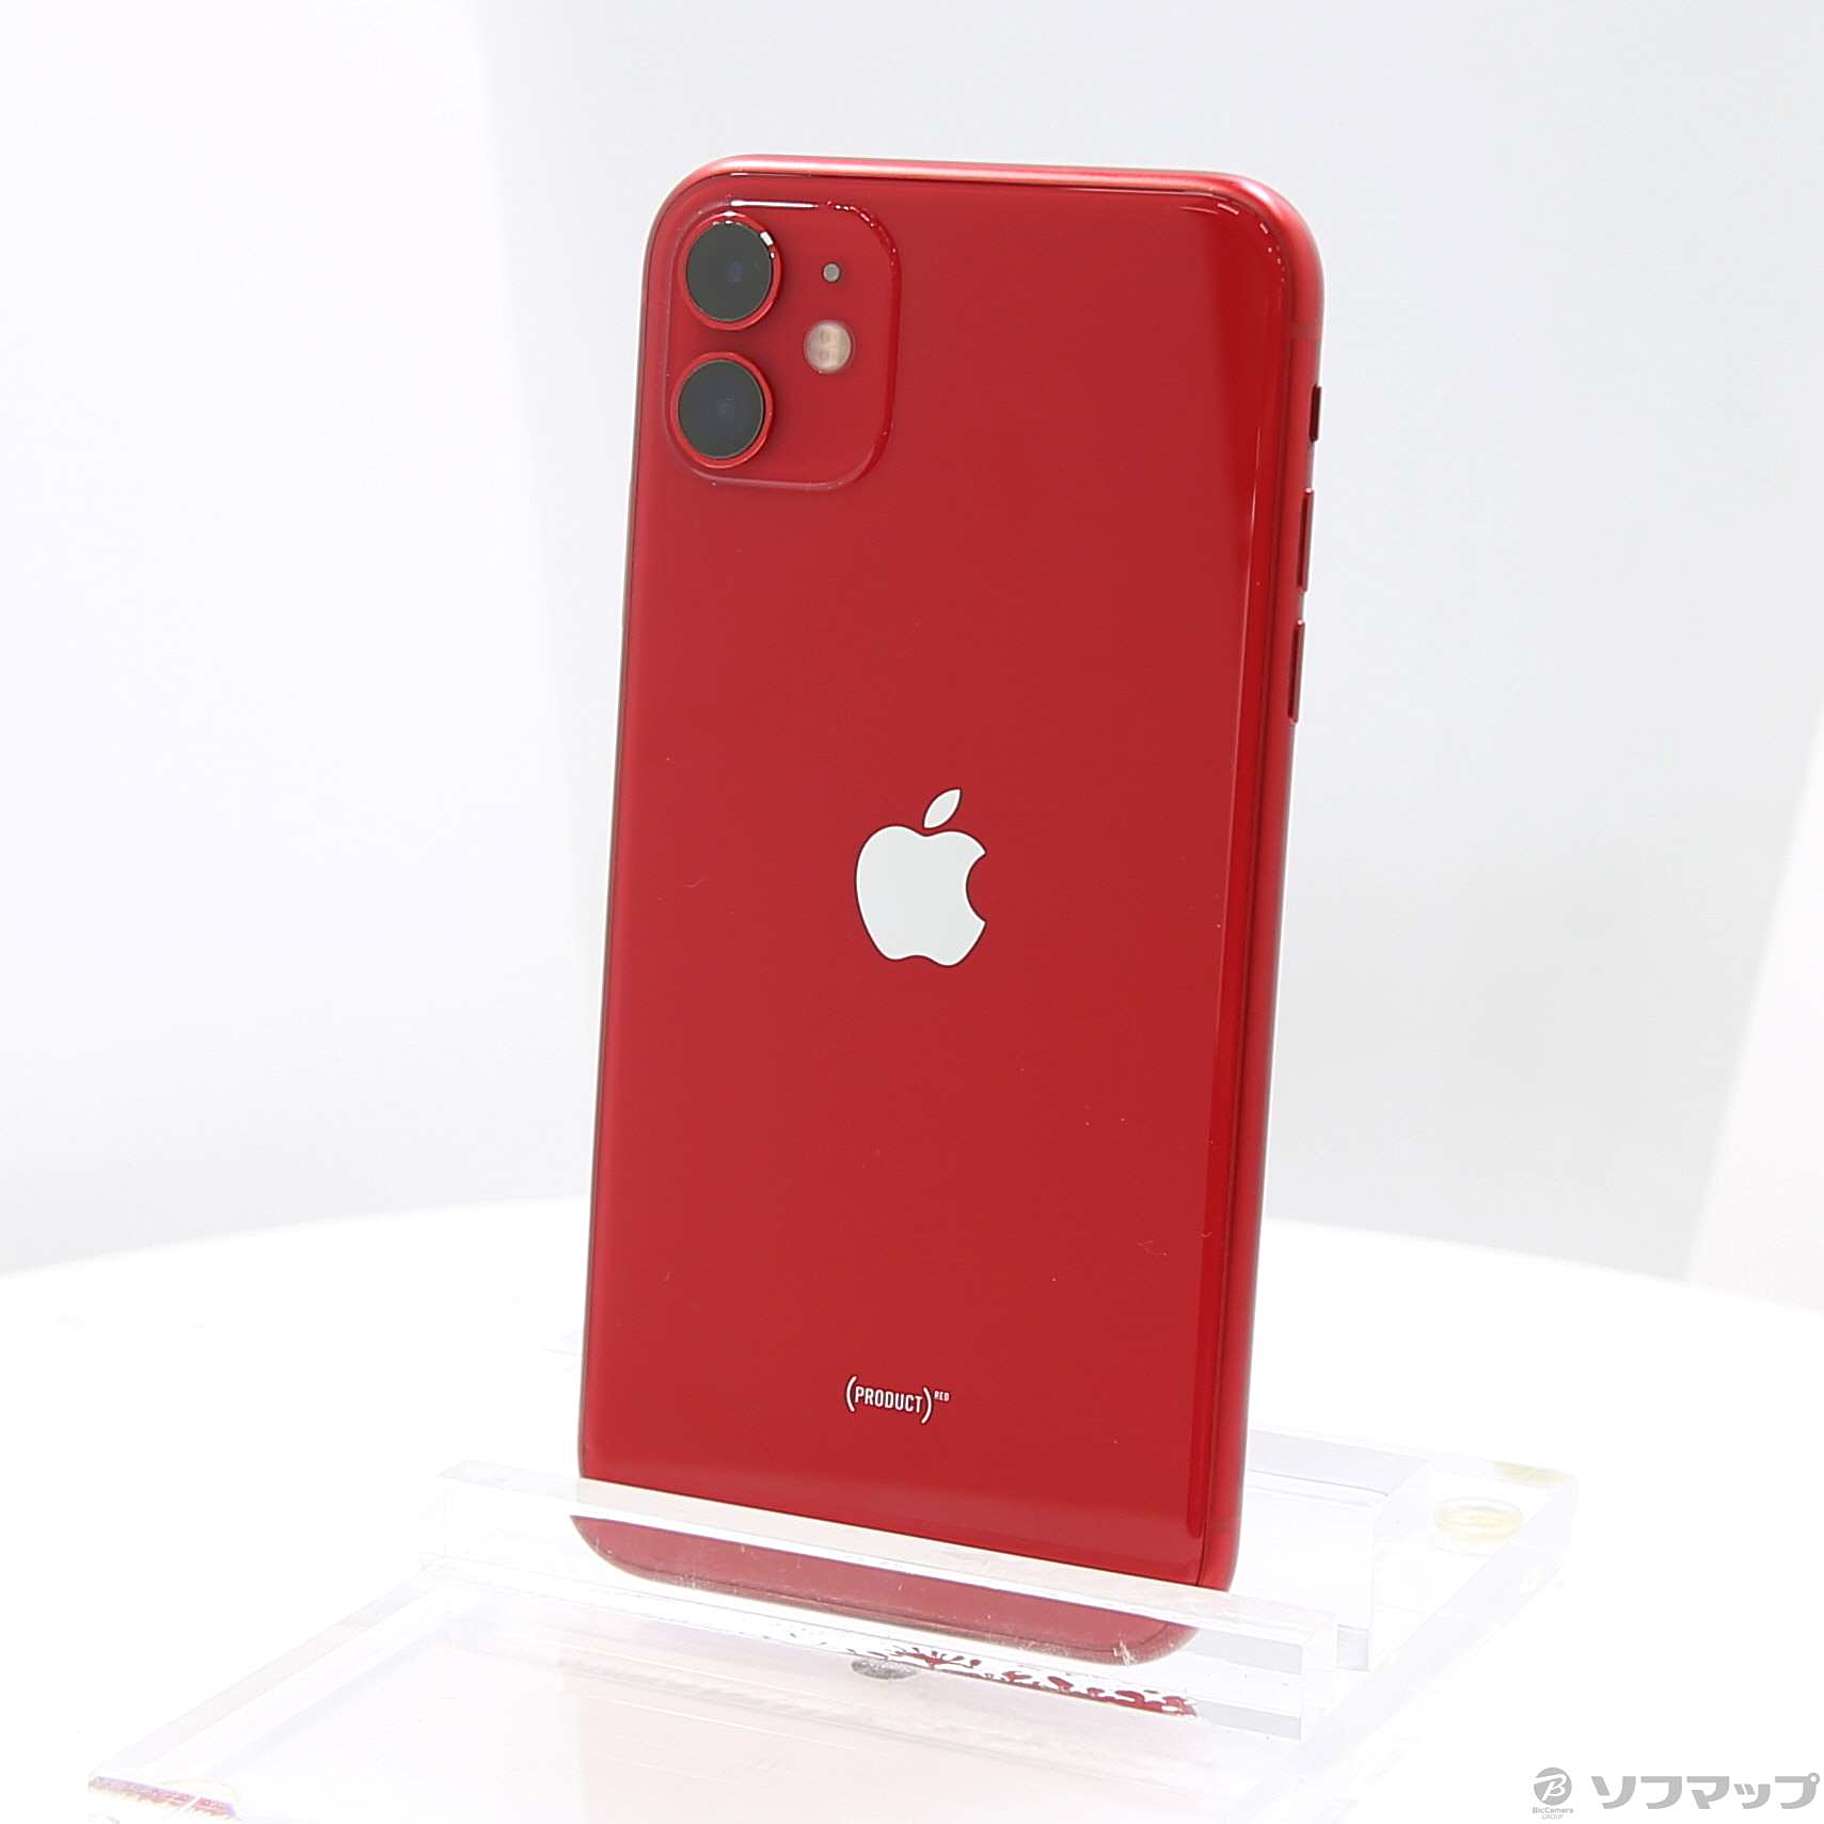 スマートフォン/携帯電話iPhone 11 product RED 128GB SIMフリー